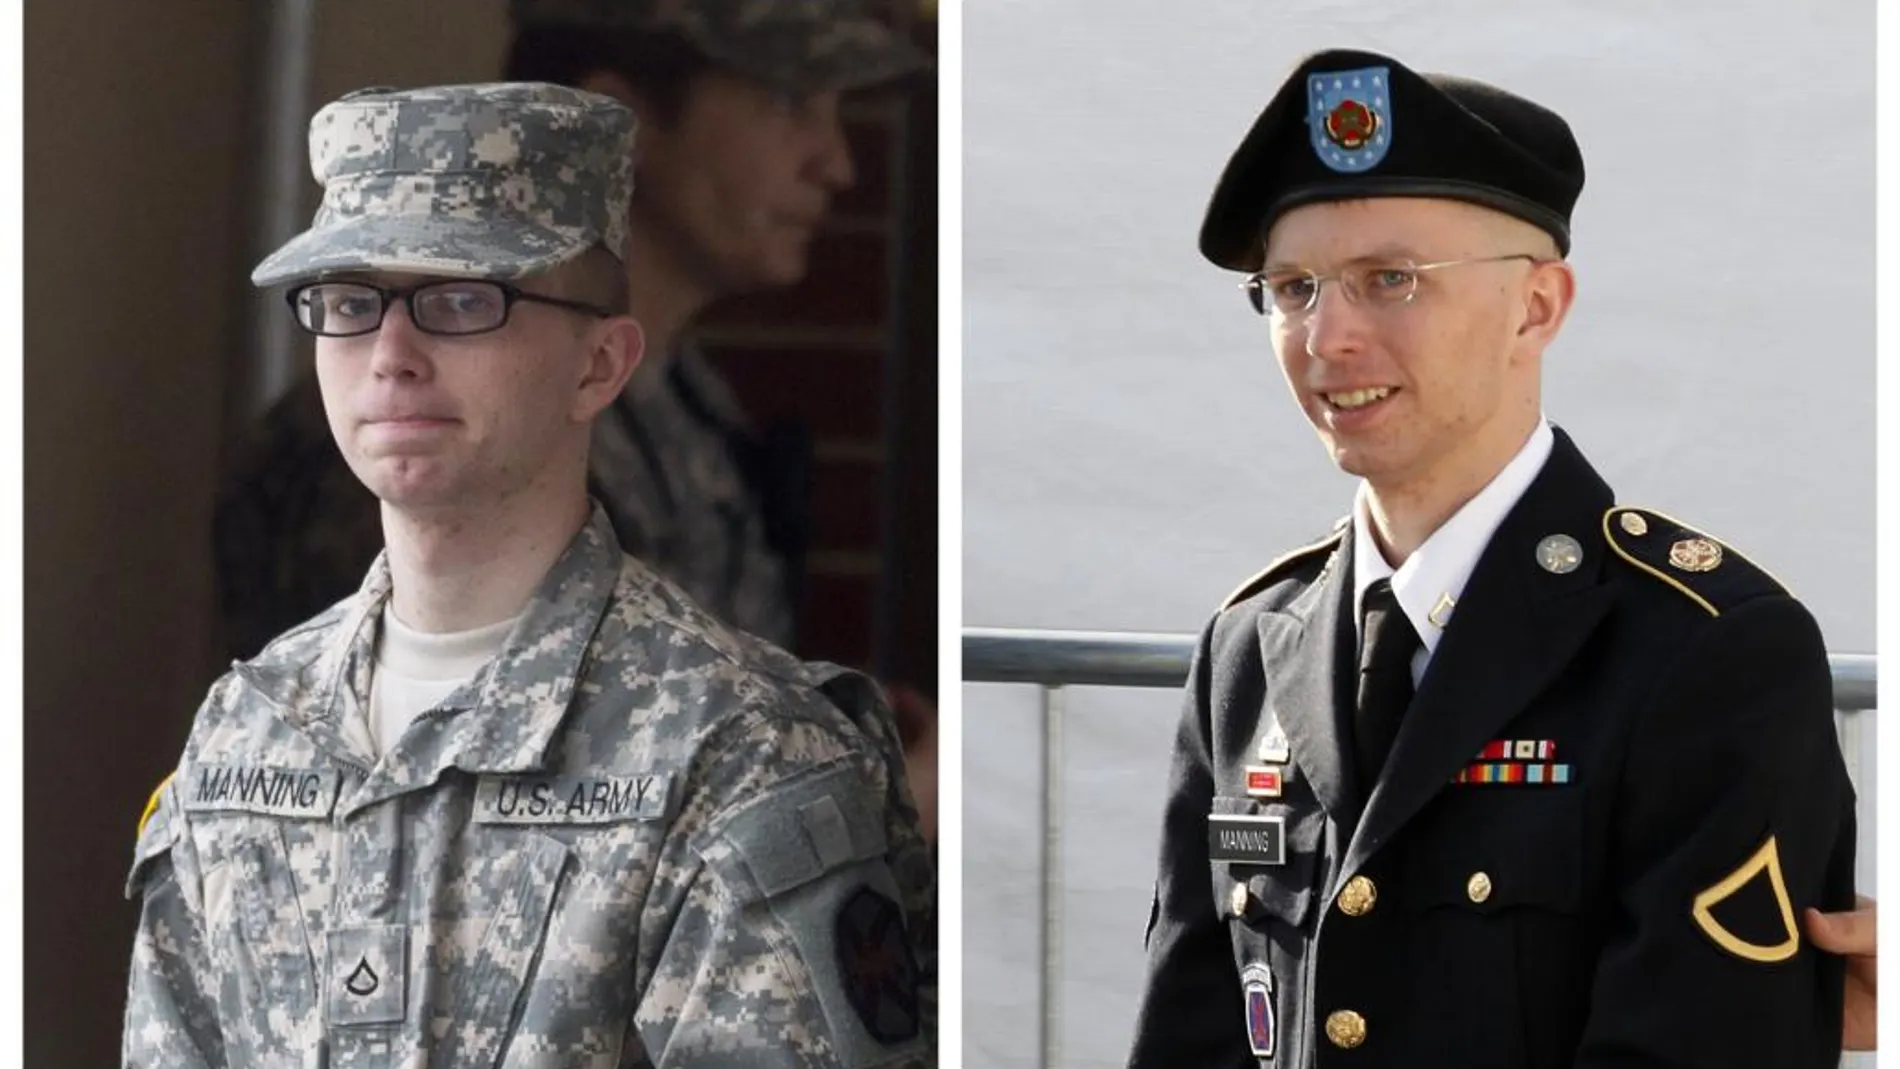 Chelsea Manning, que nació Bradley Manning, en una imagen de archivo